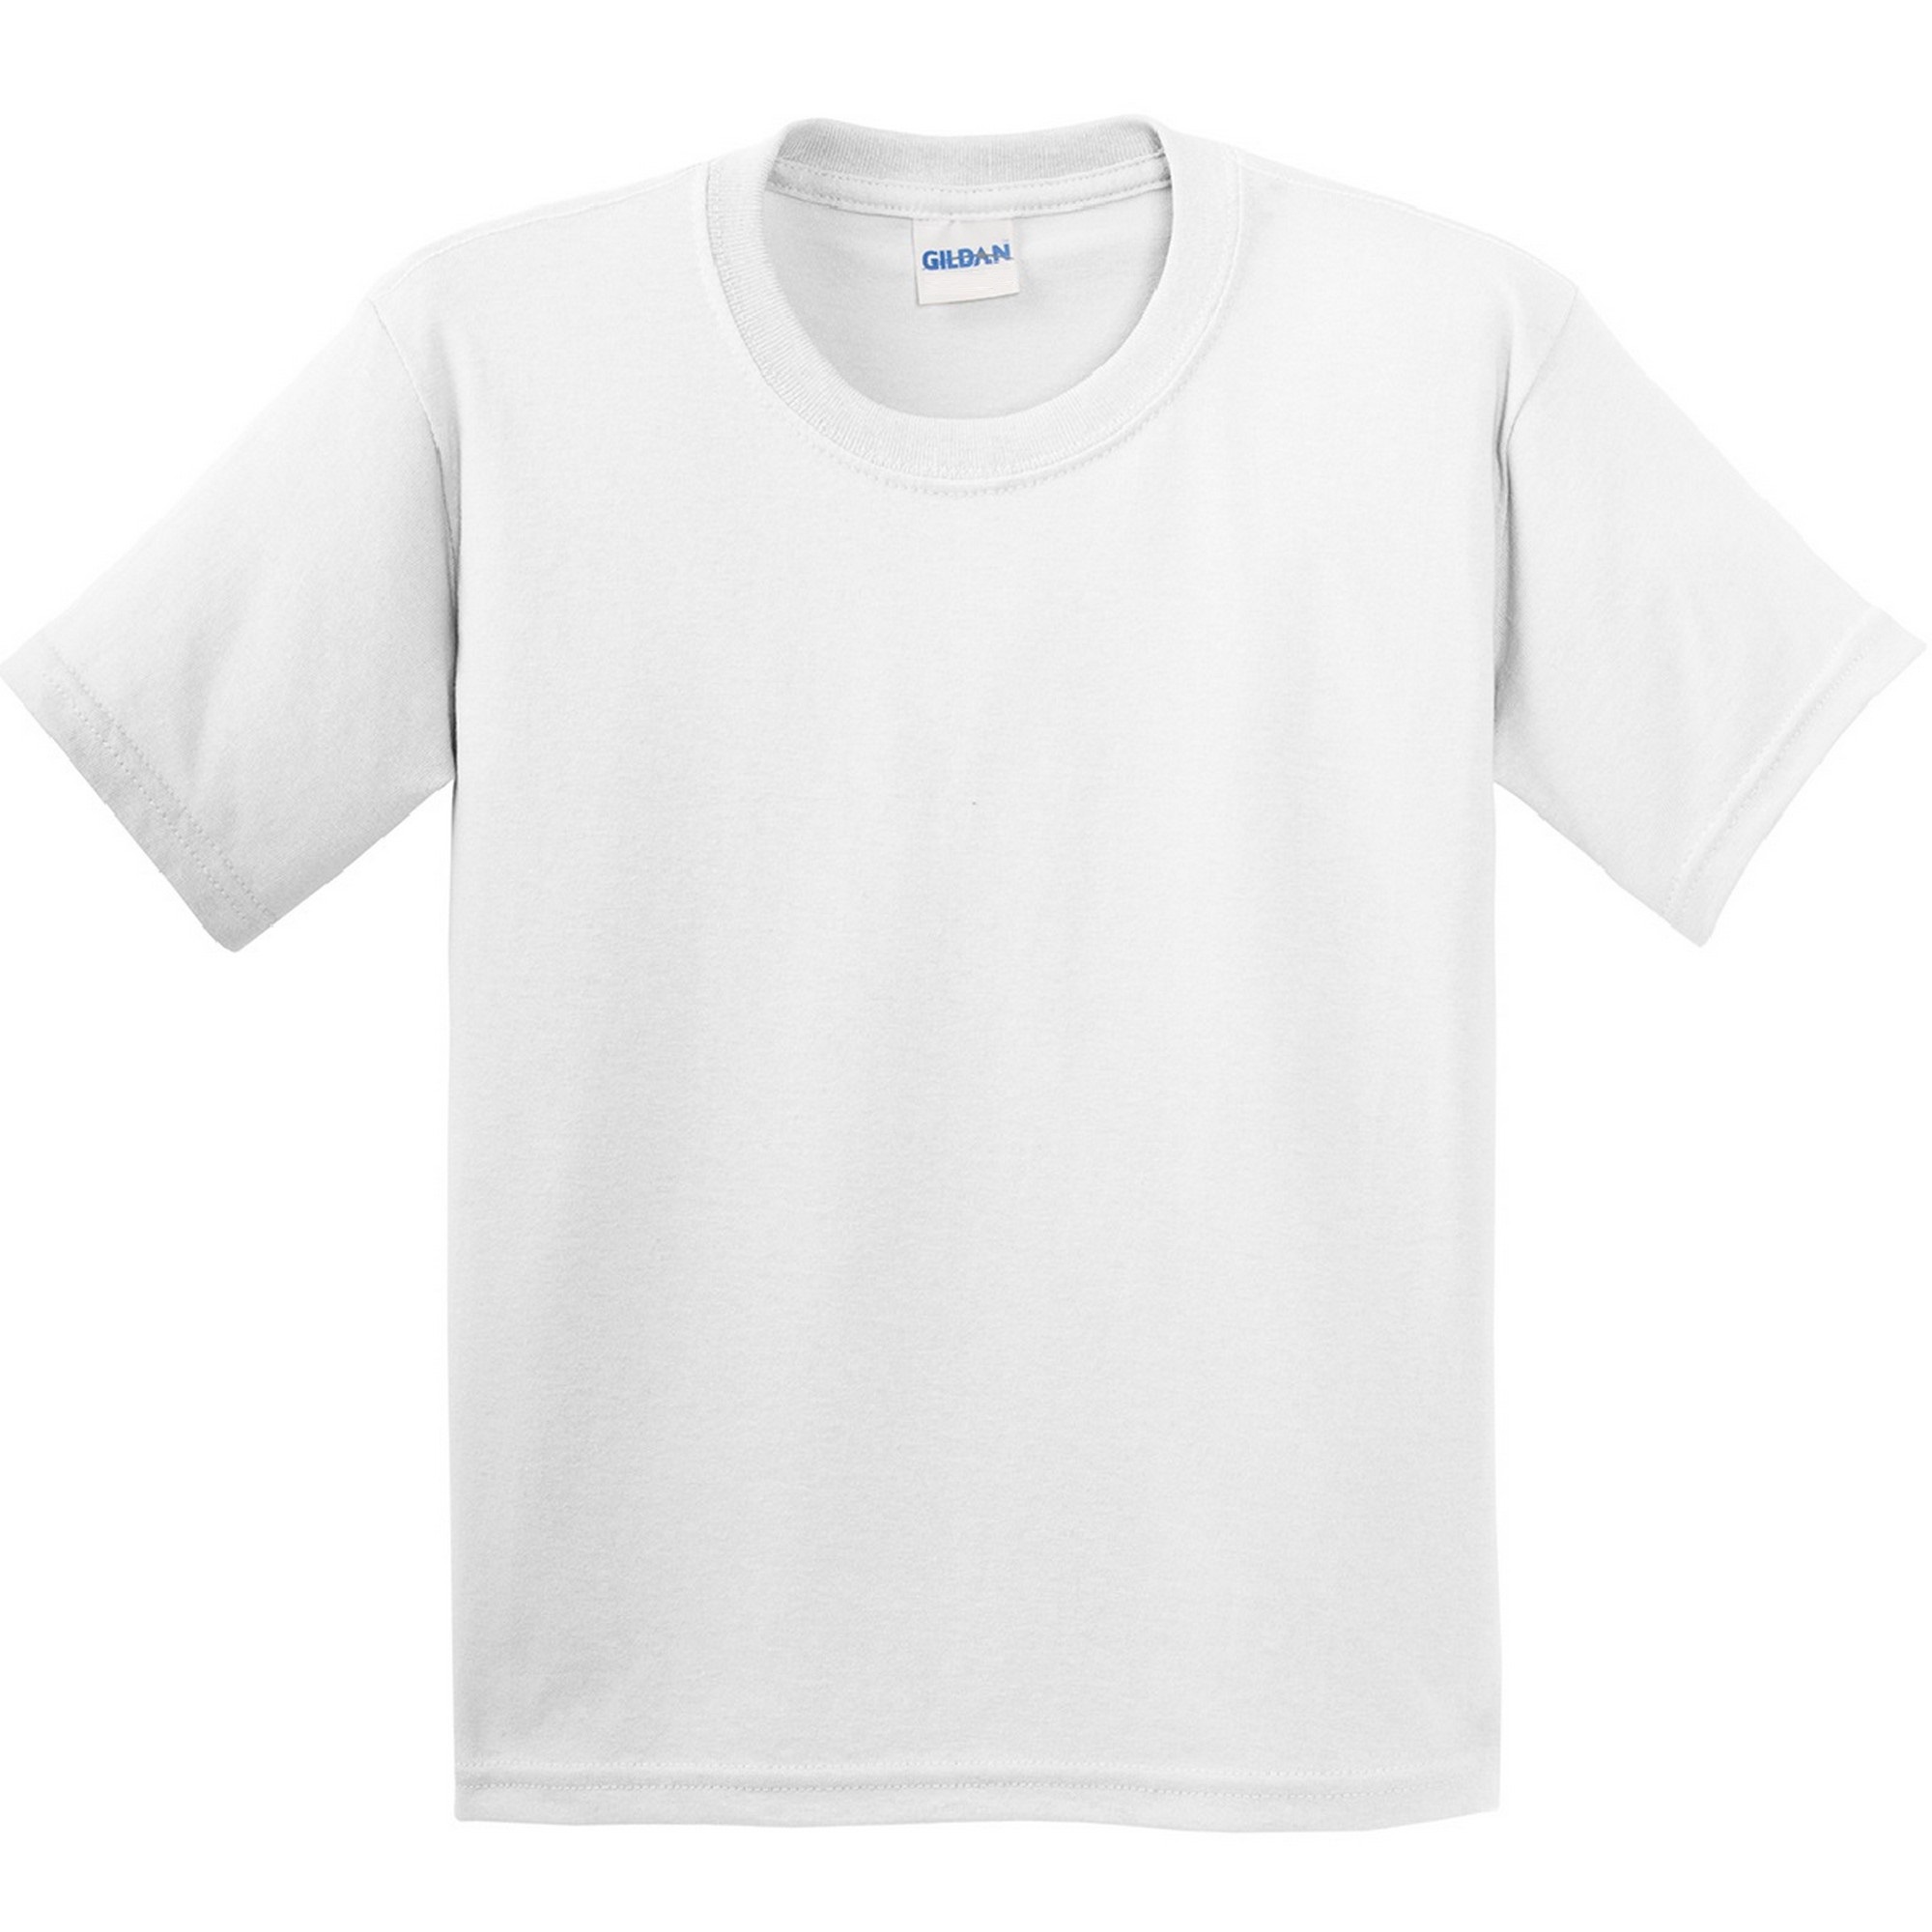 Camiseta Básica De Manga Corta Estilosa Suave Gildan - blanco - 